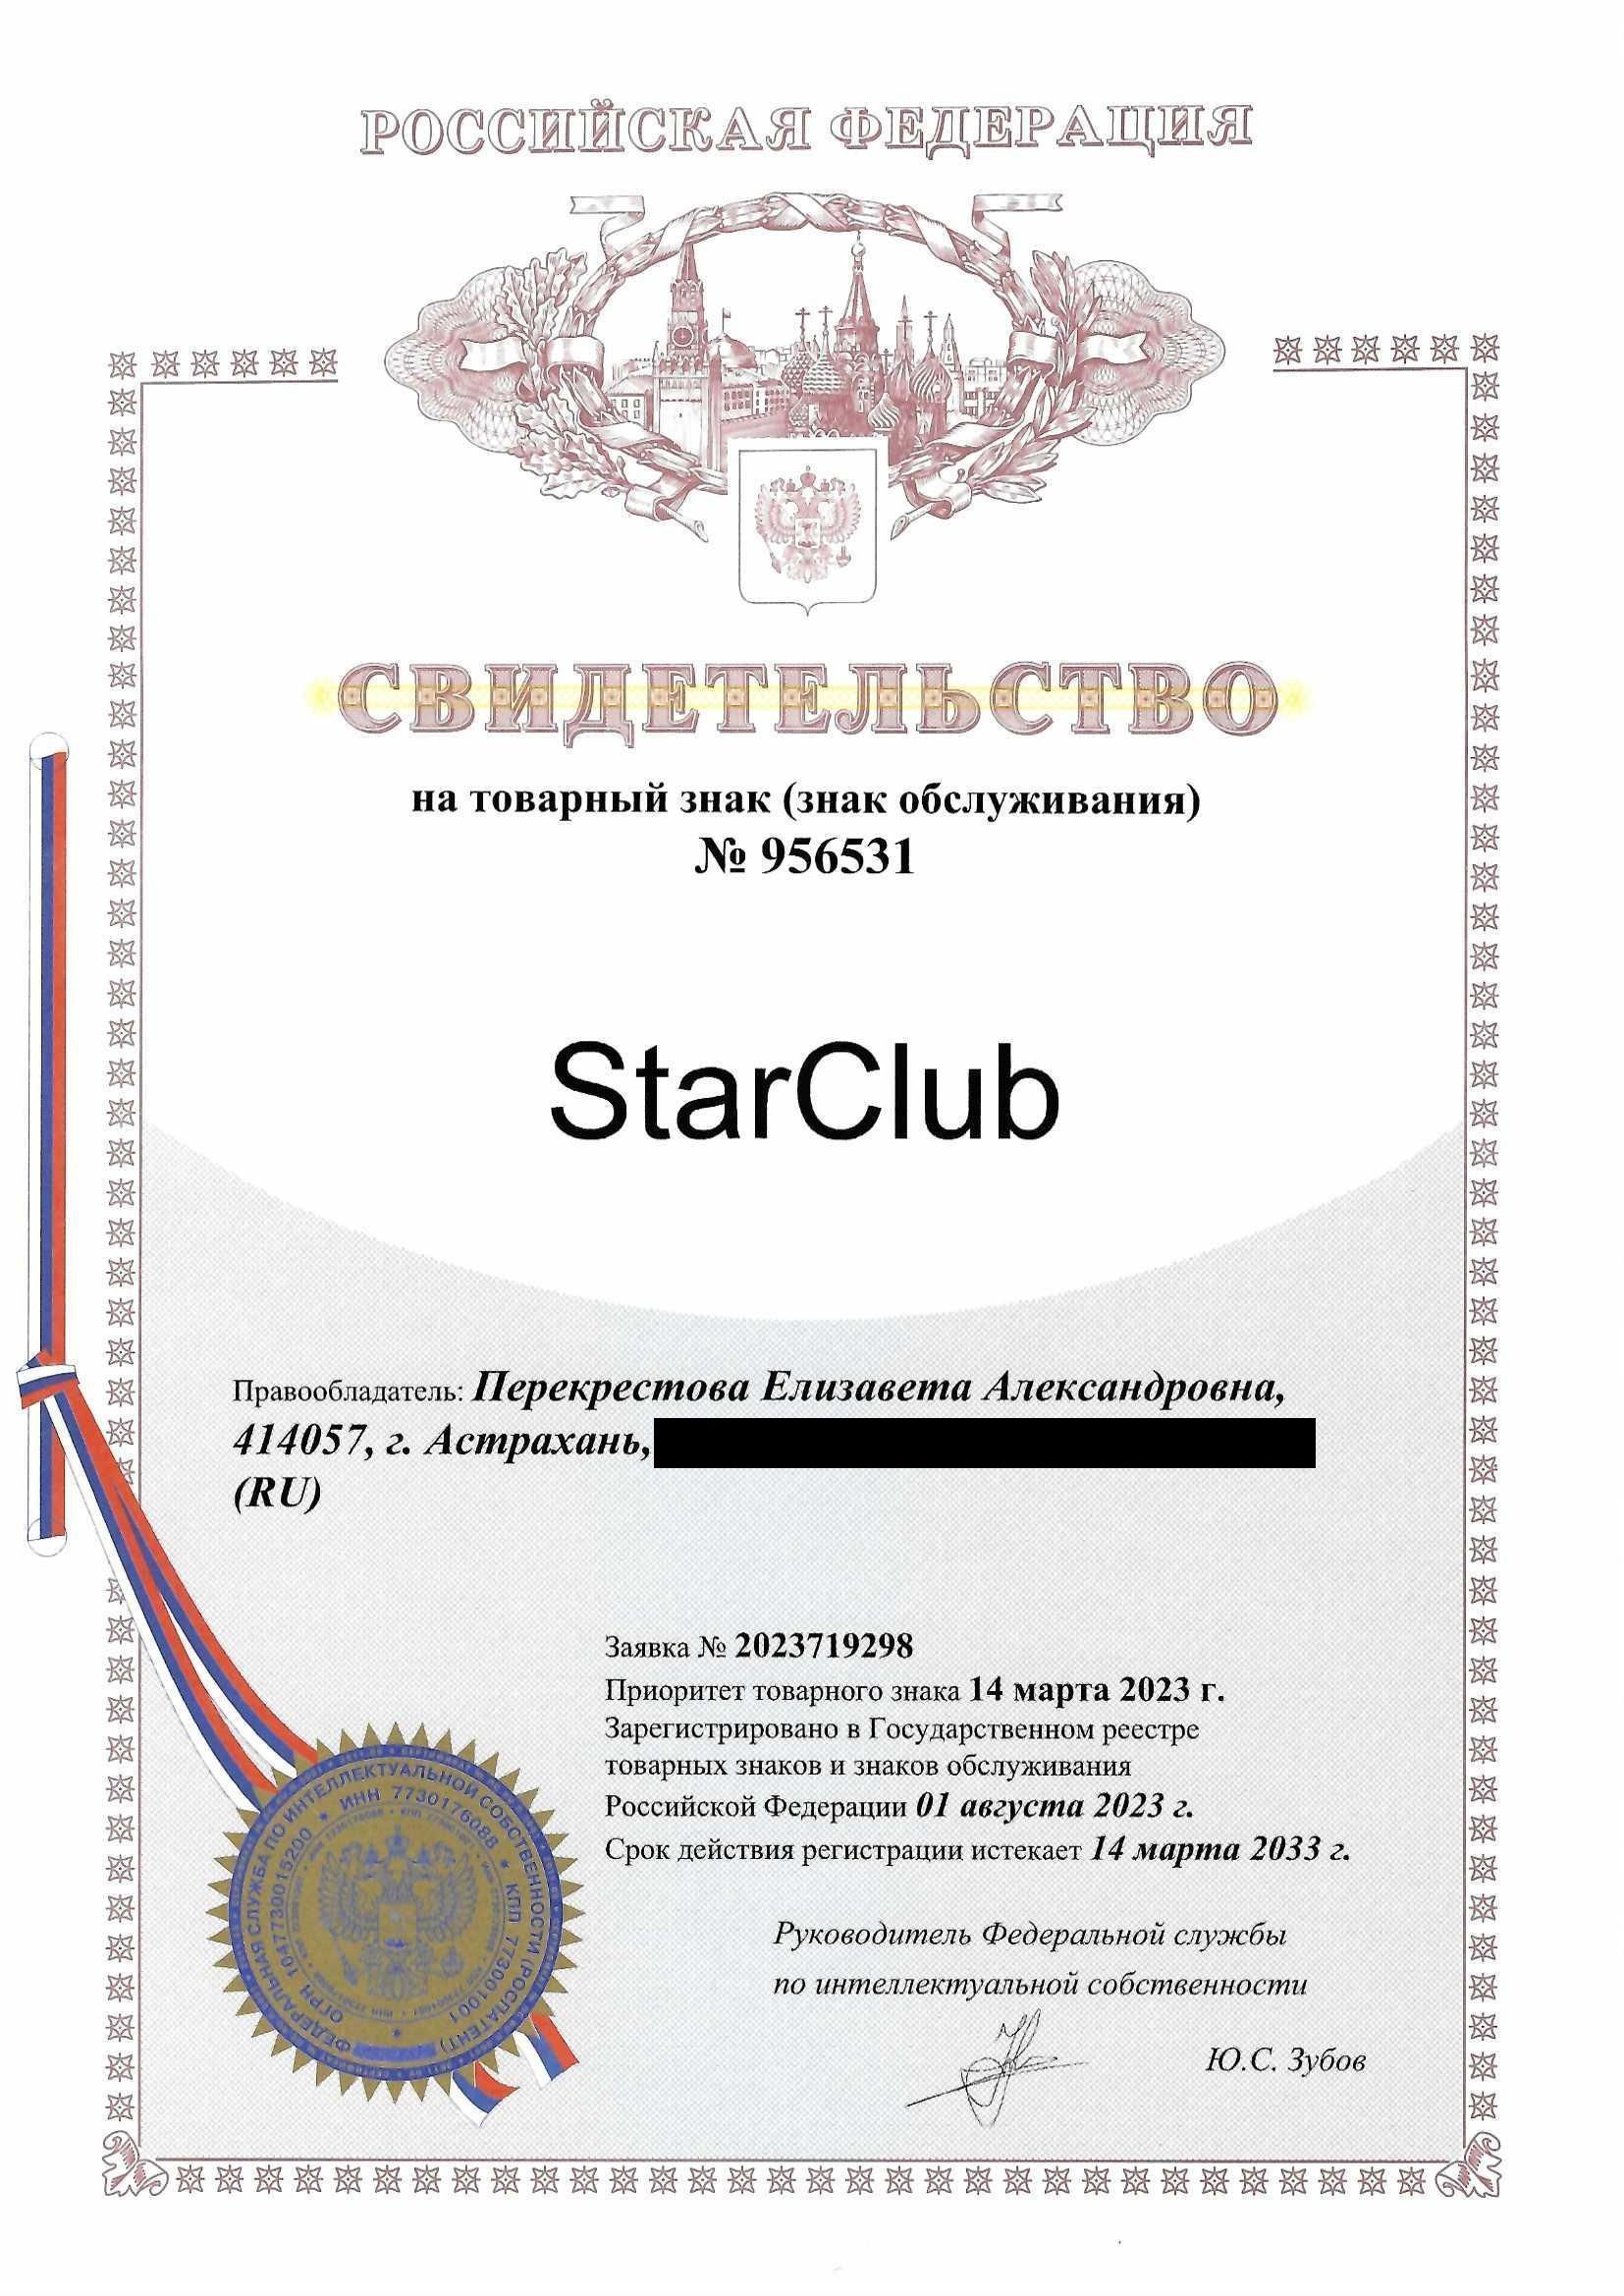 Товарный знак № 956531 – StarClub